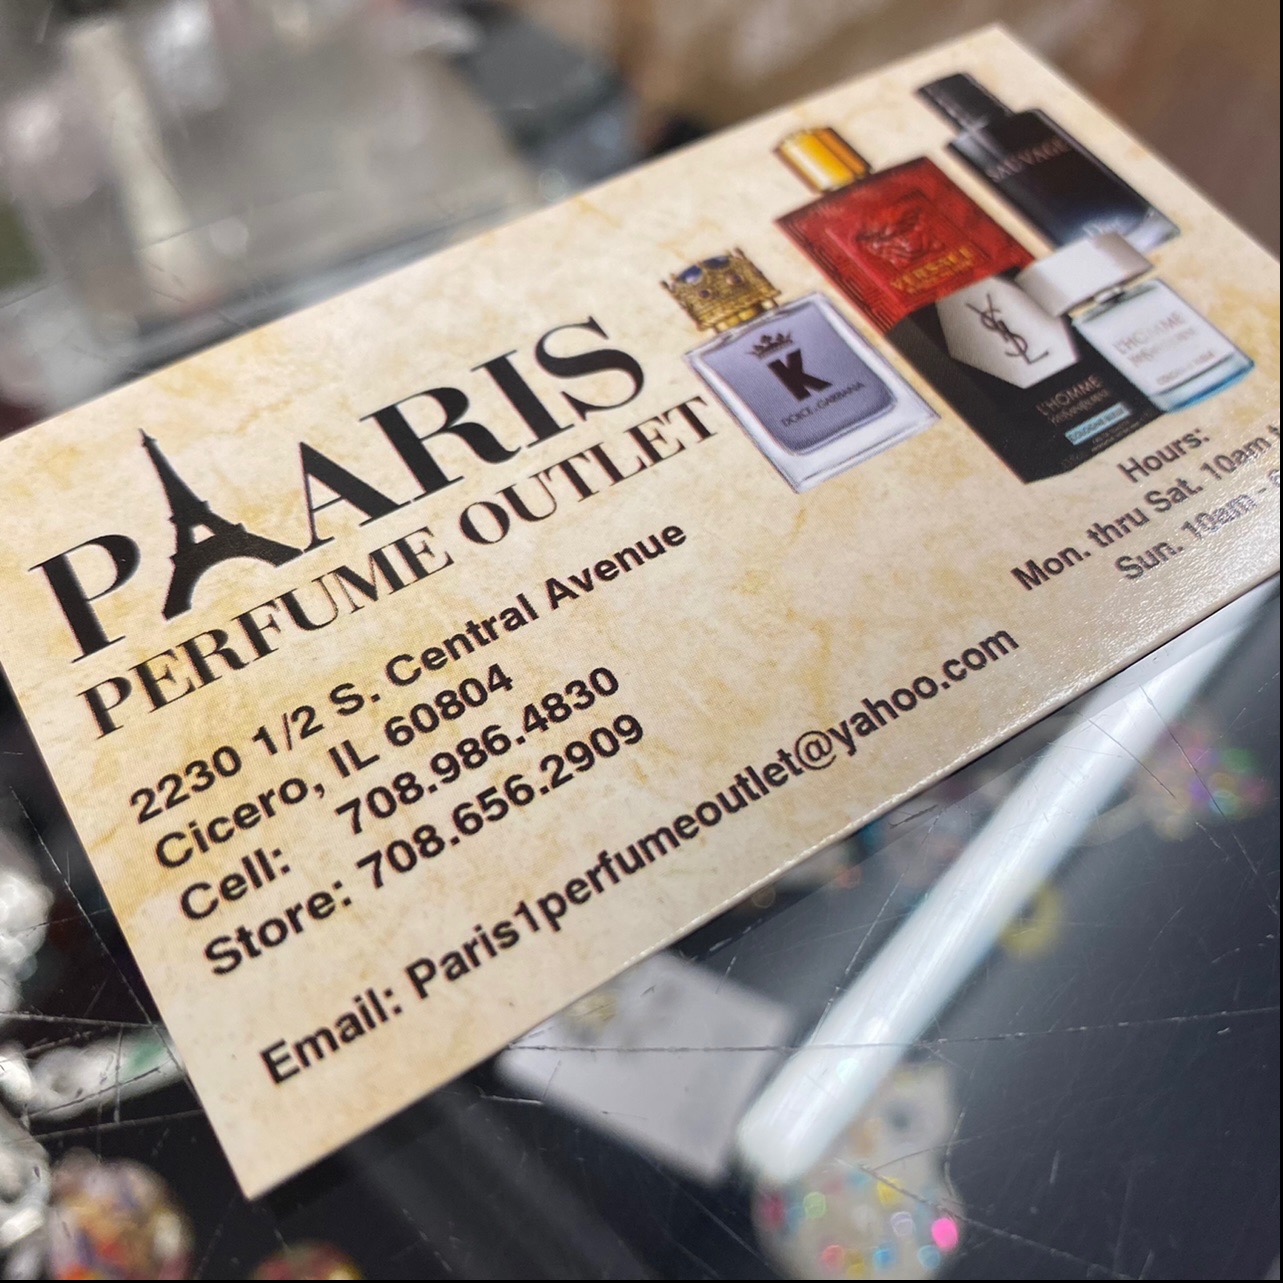 Paris perfume outlet